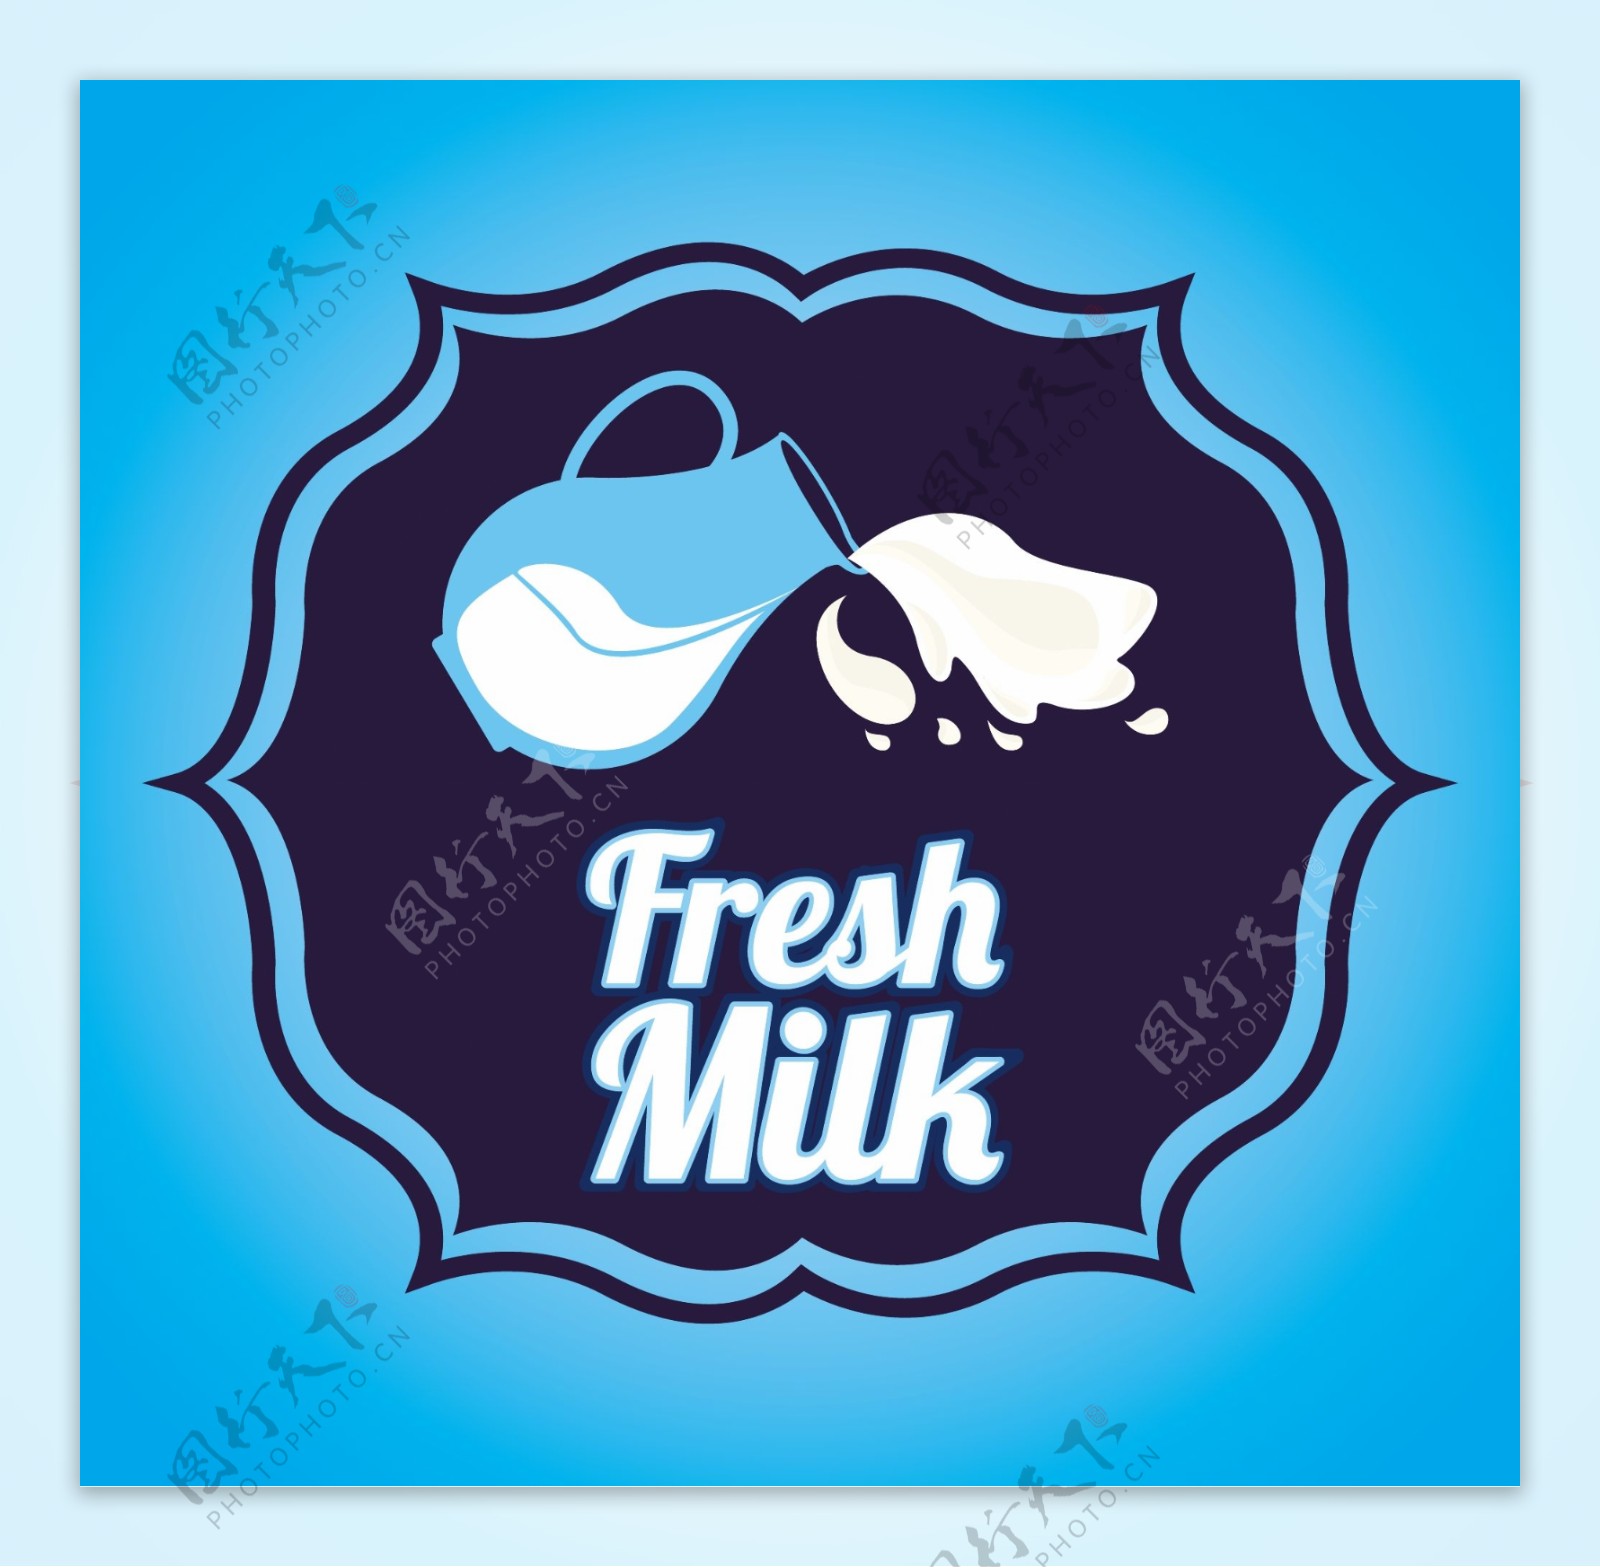 牛奶标签图片